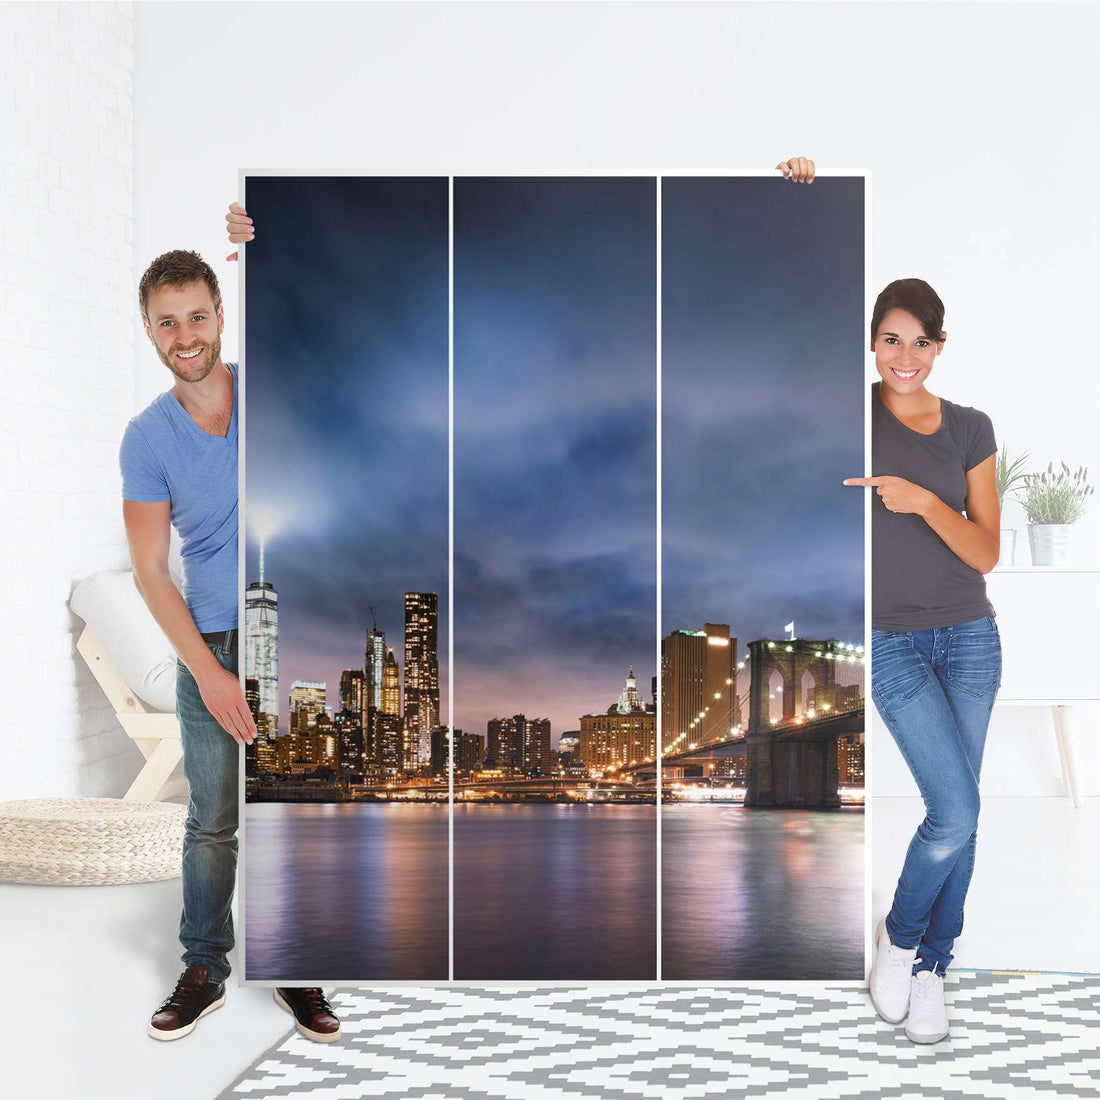 Folie für Möbel Brooklyn Bridge - IKEA Pax Schrank 201 cm Höhe - 3 Türen - Folie